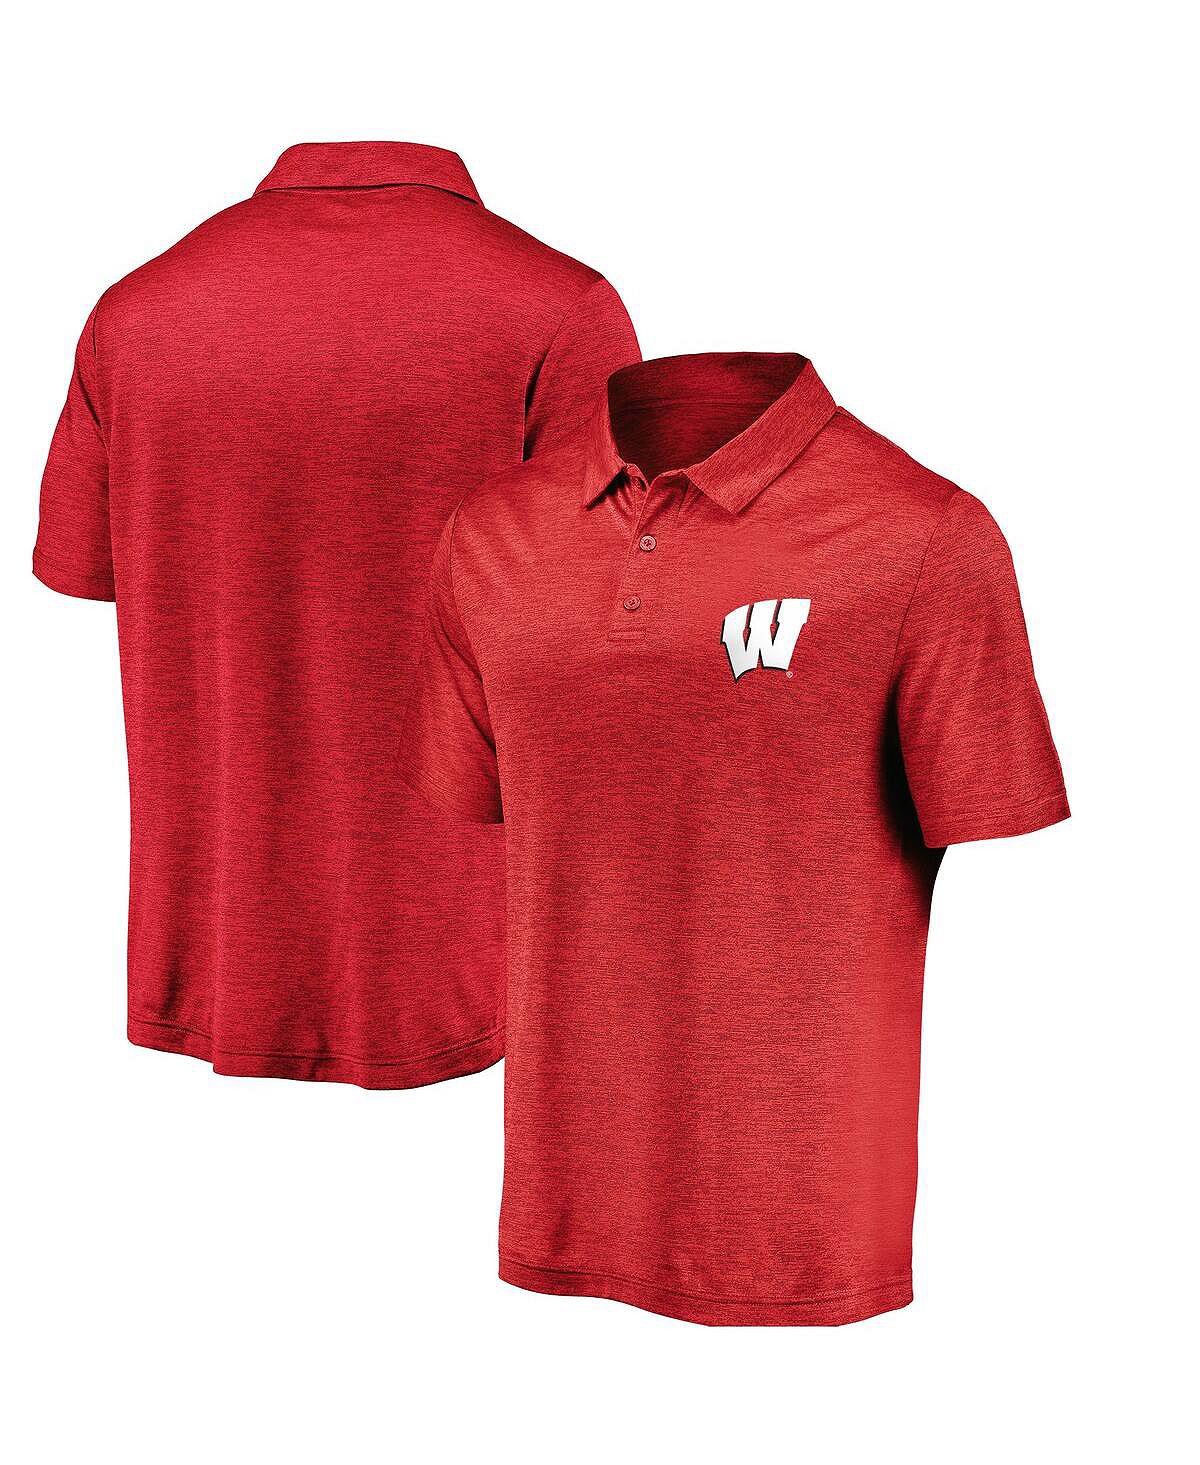 Мужская рубашка-поло в полоску с фирменным логотипом Red Wisconsin Badgers Primary Logo Fanatics